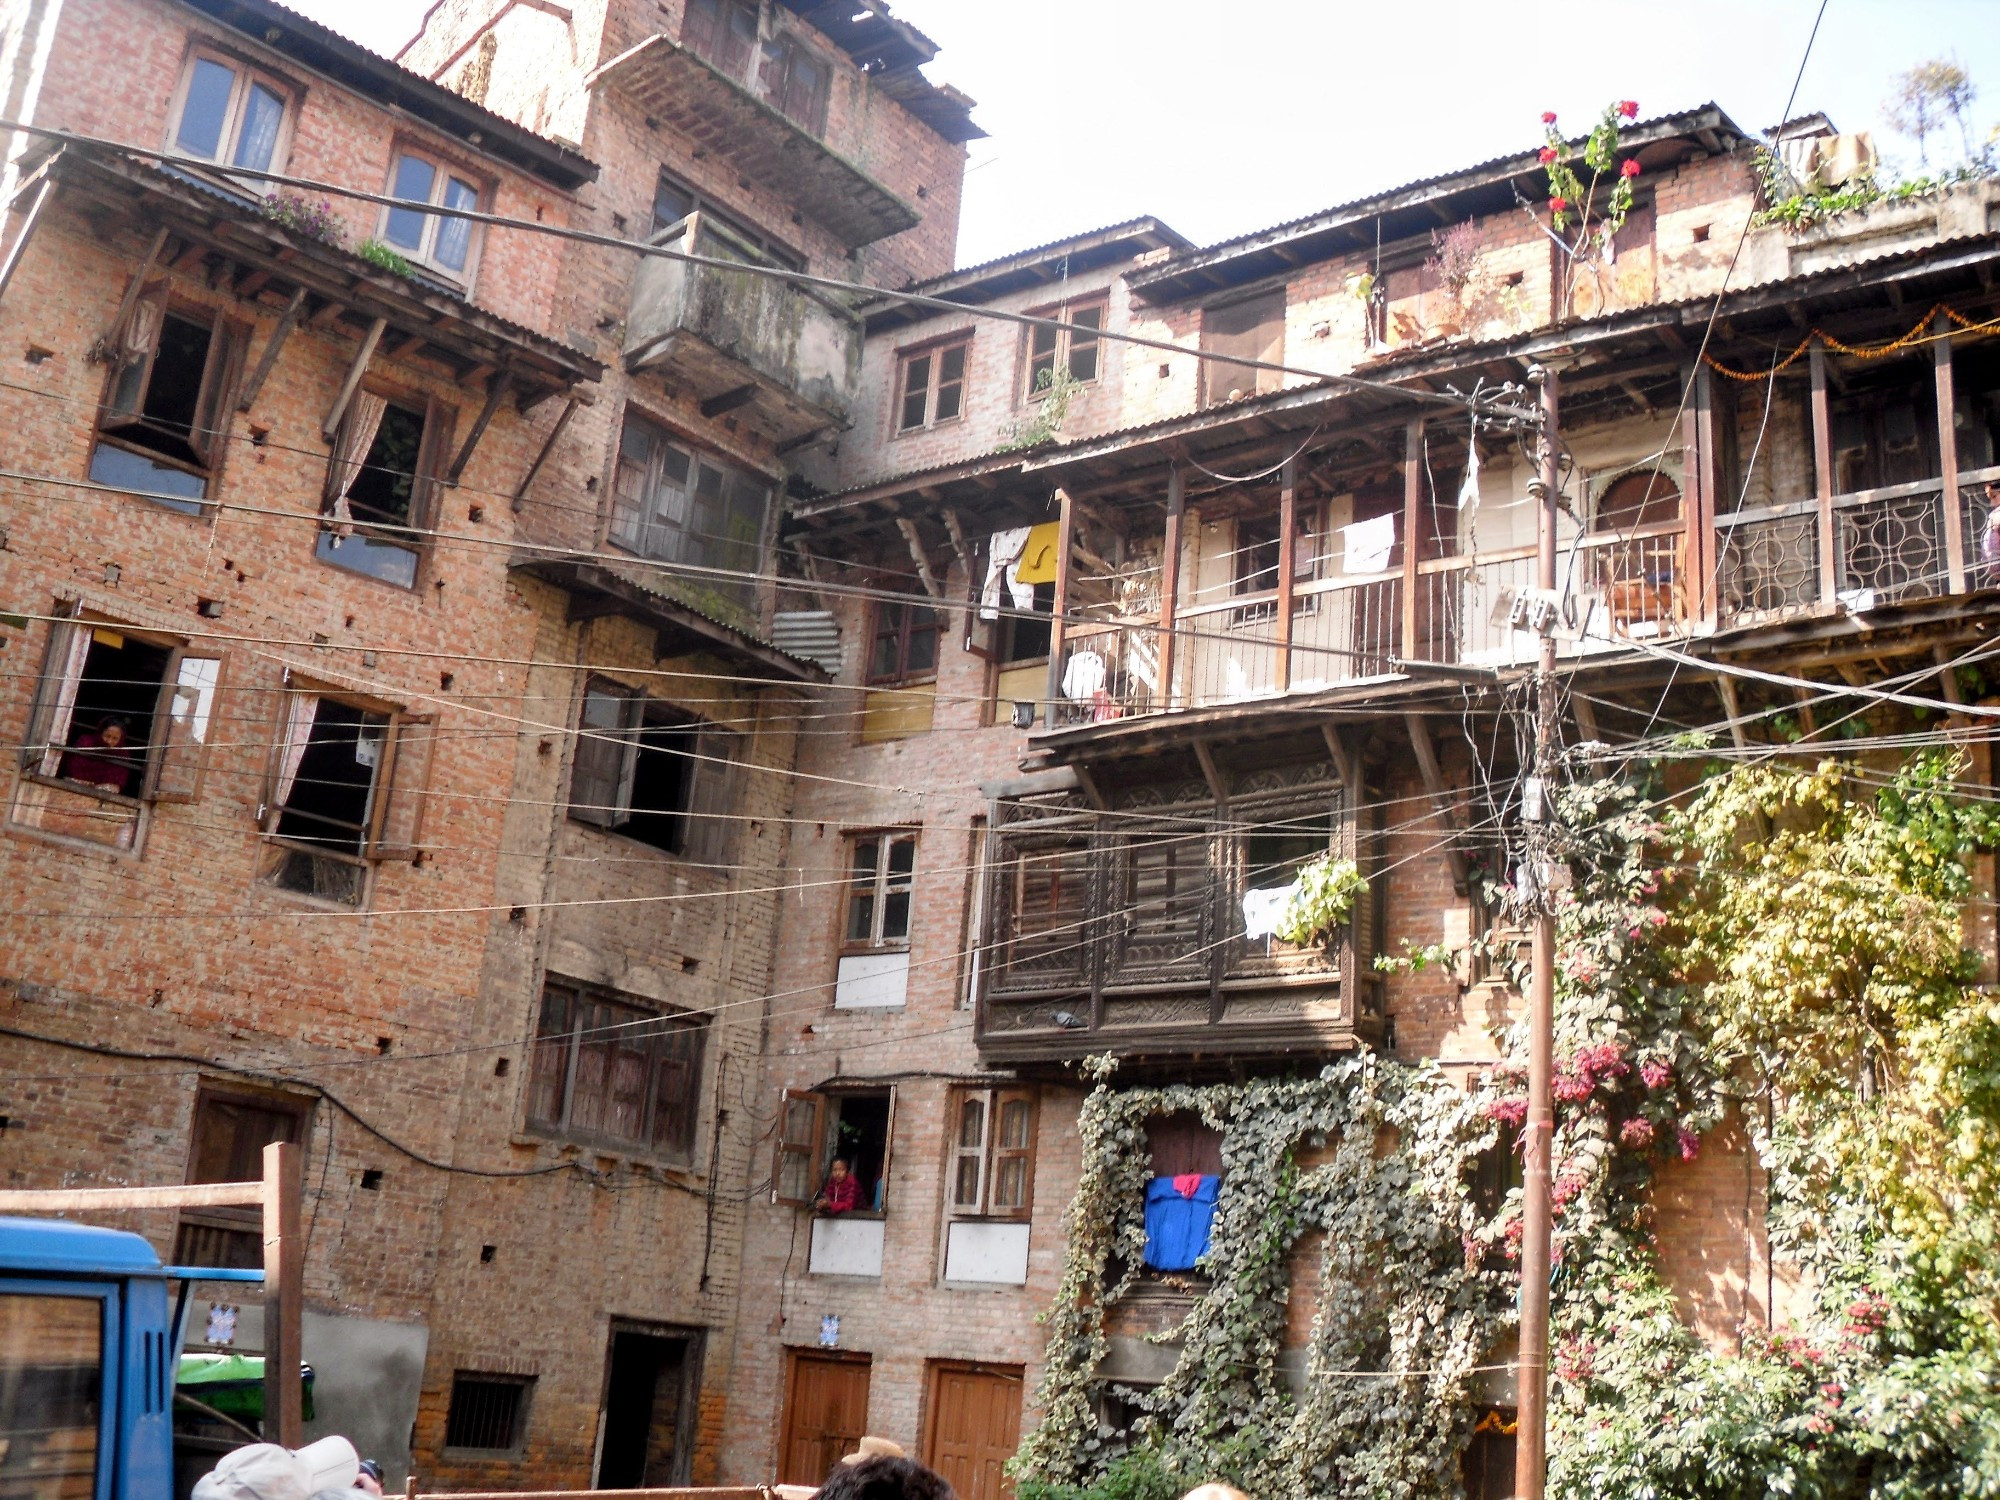 Local housing Bhaktapur, Nepal